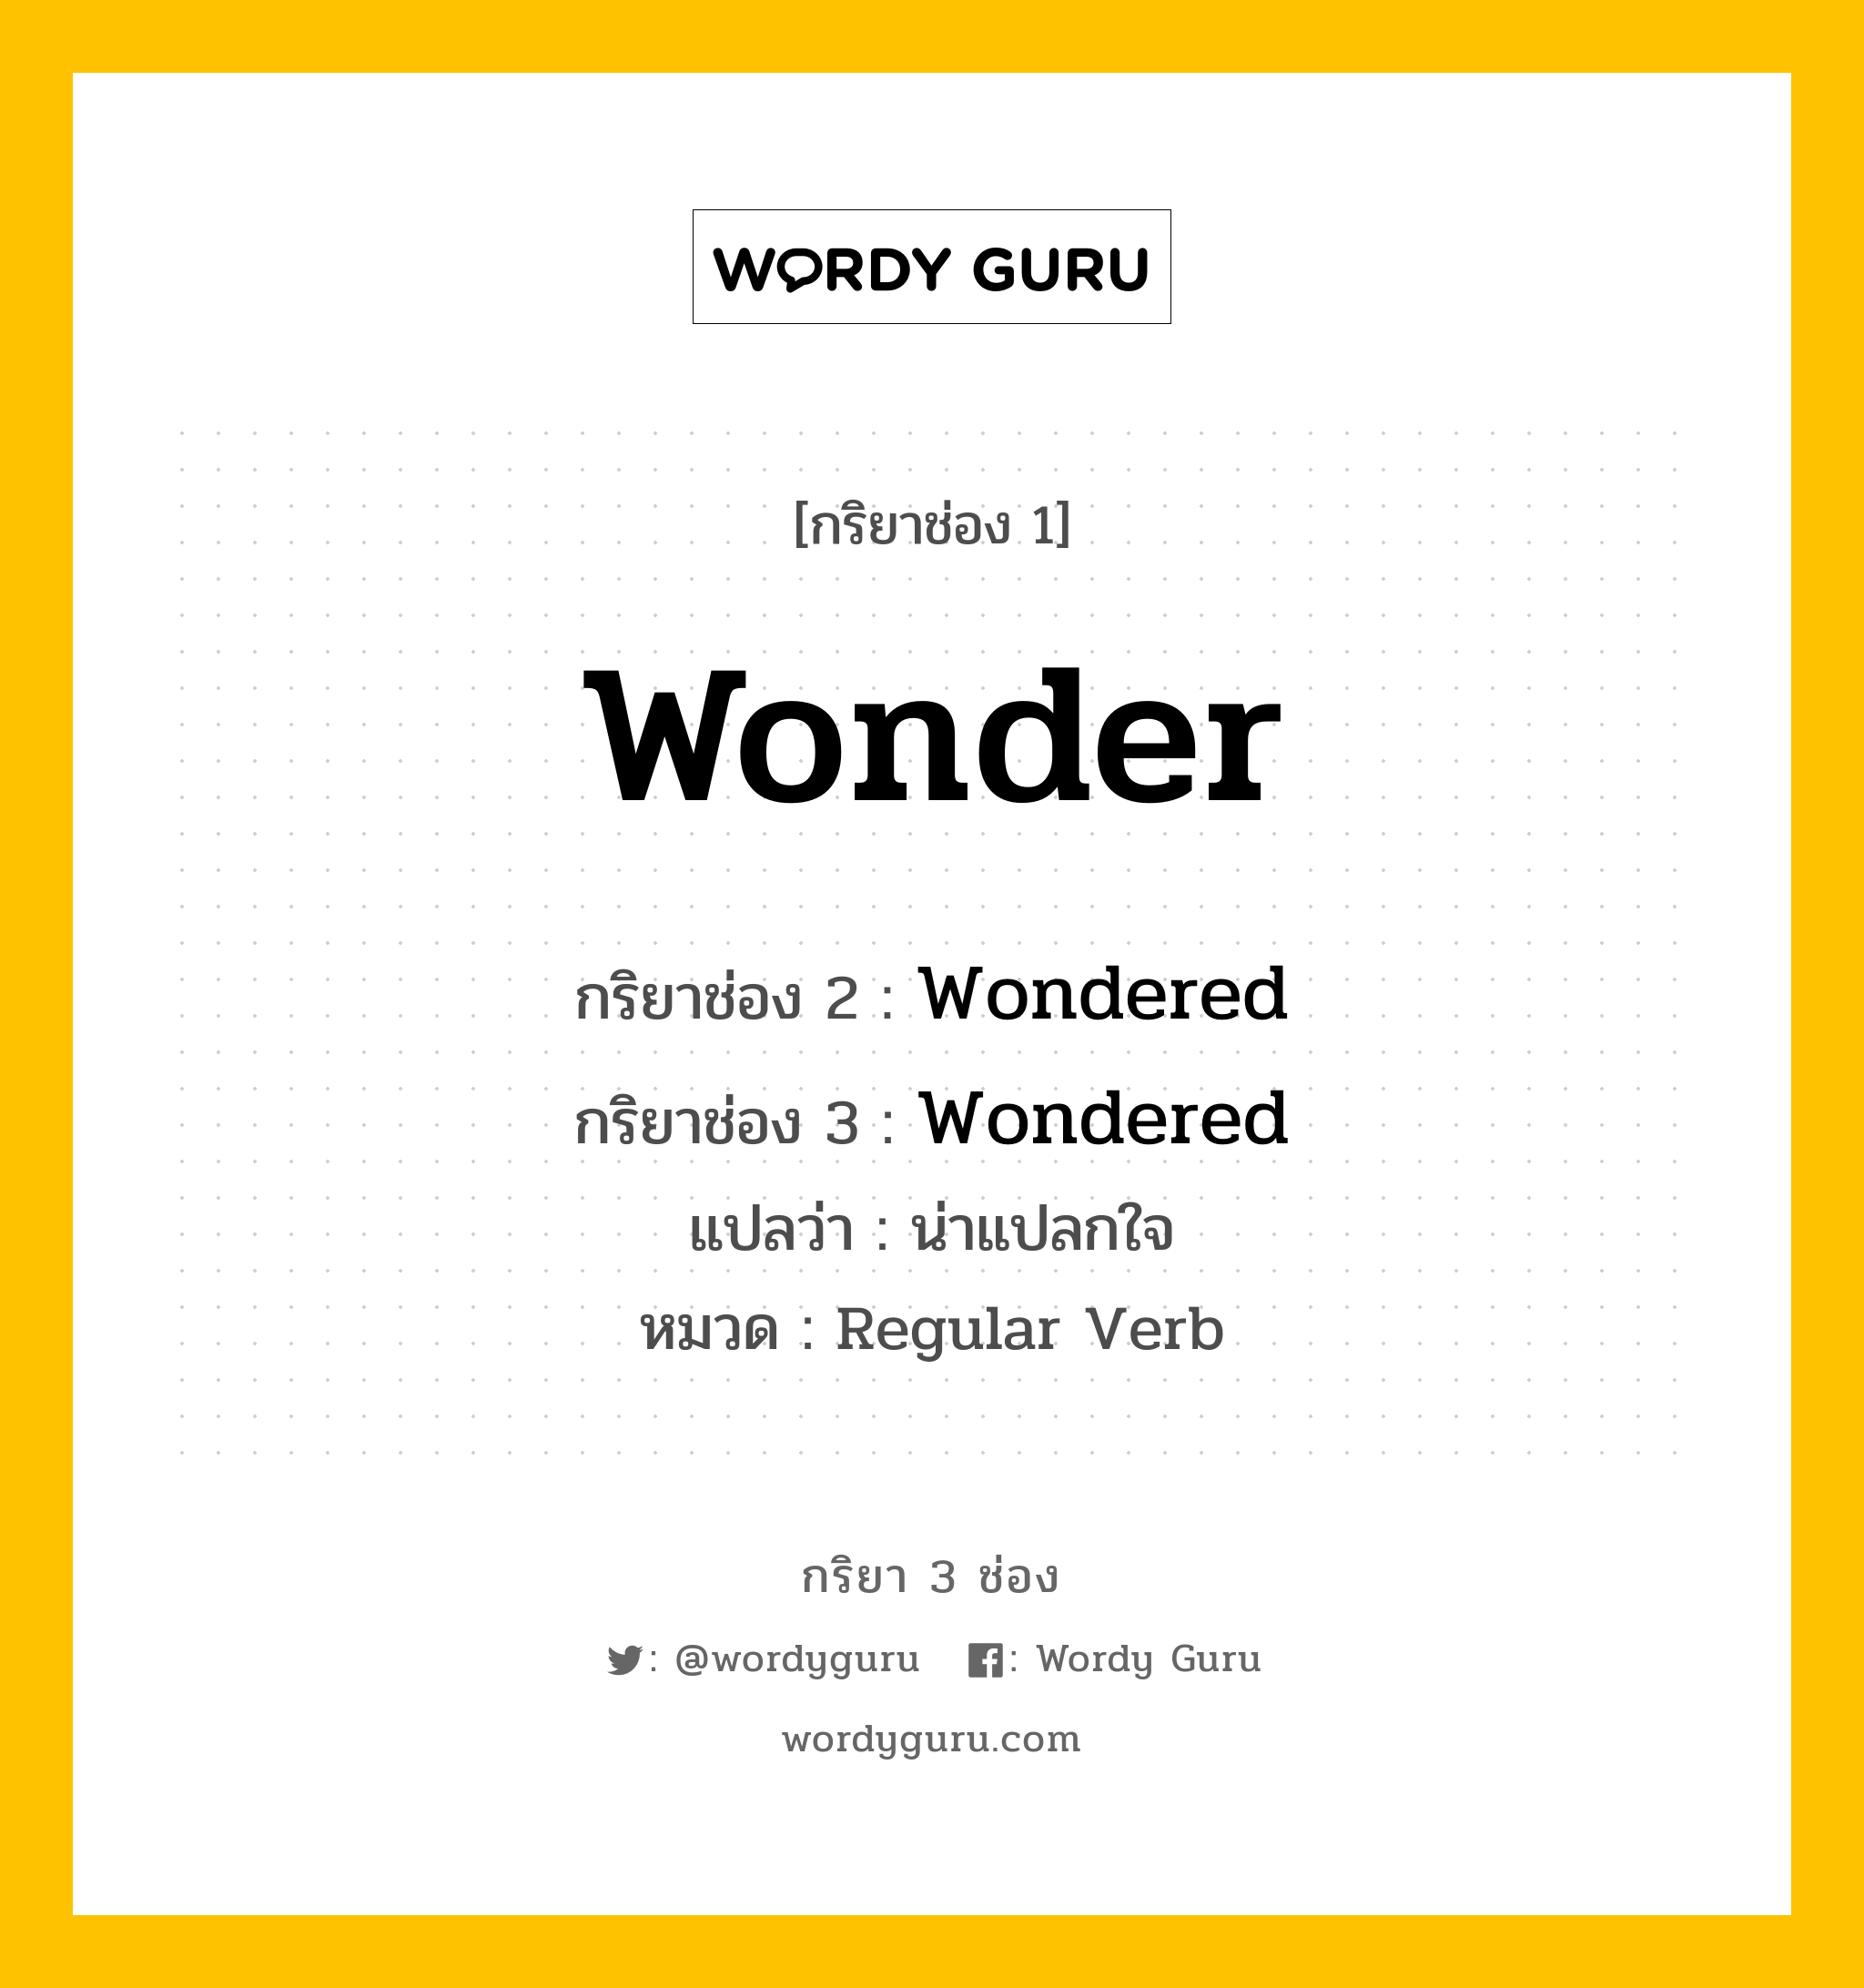 กริยา 3 ช่อง ของ Wonder คืออะไร? มาดูคำอ่าน คำแปลกันเลย, กริยาช่อง 1 Wonder กริยาช่อง 2 Wondered กริยาช่อง 3 Wondered แปลว่า น่าแปลกใจ หมวด Regular Verb หมวด Regular Verb